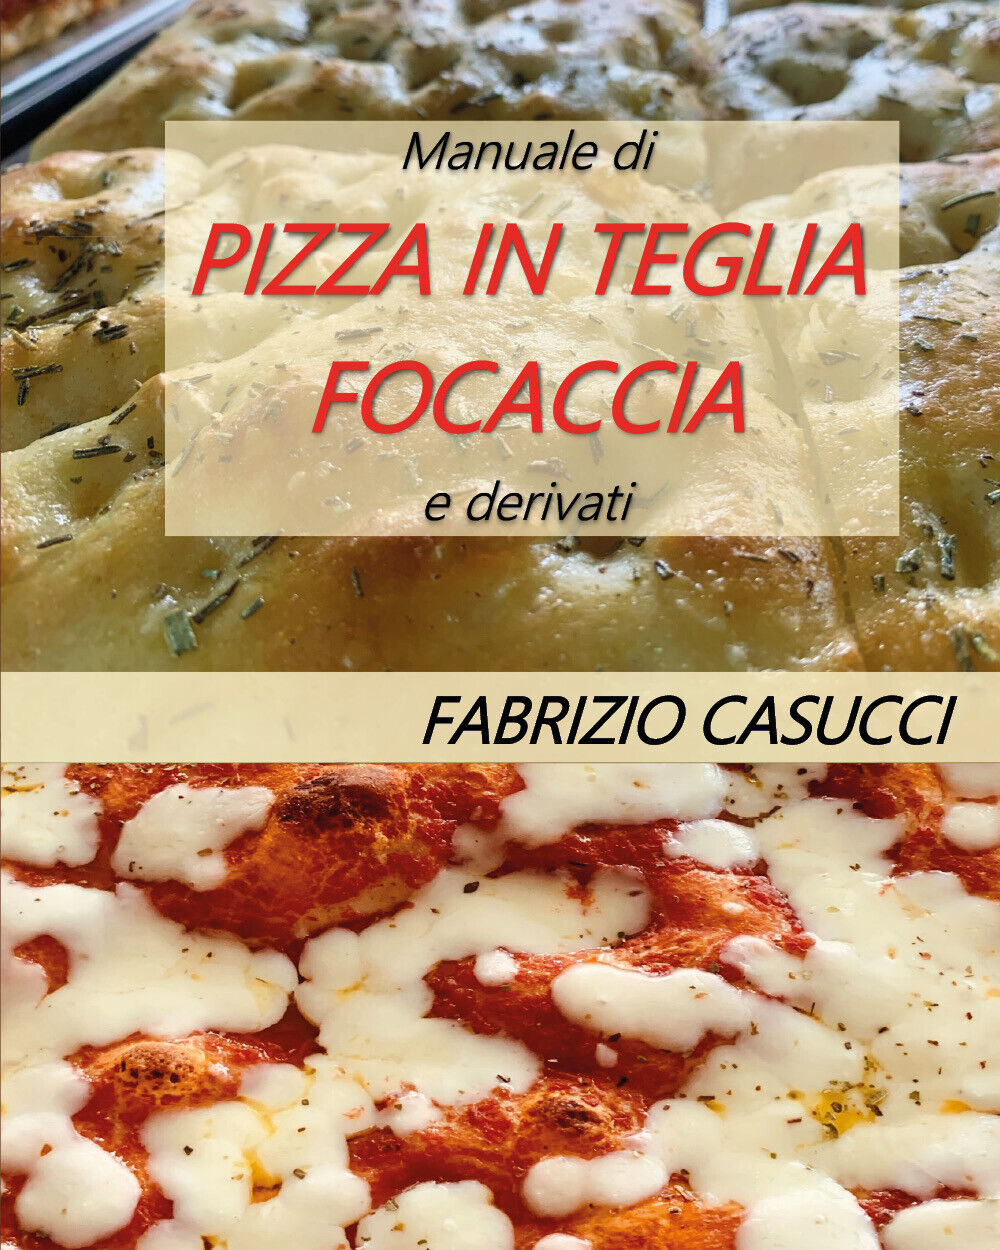 Manuale di pizza in teglia focaccia e derivati - Fabrizio Casucci - 2020